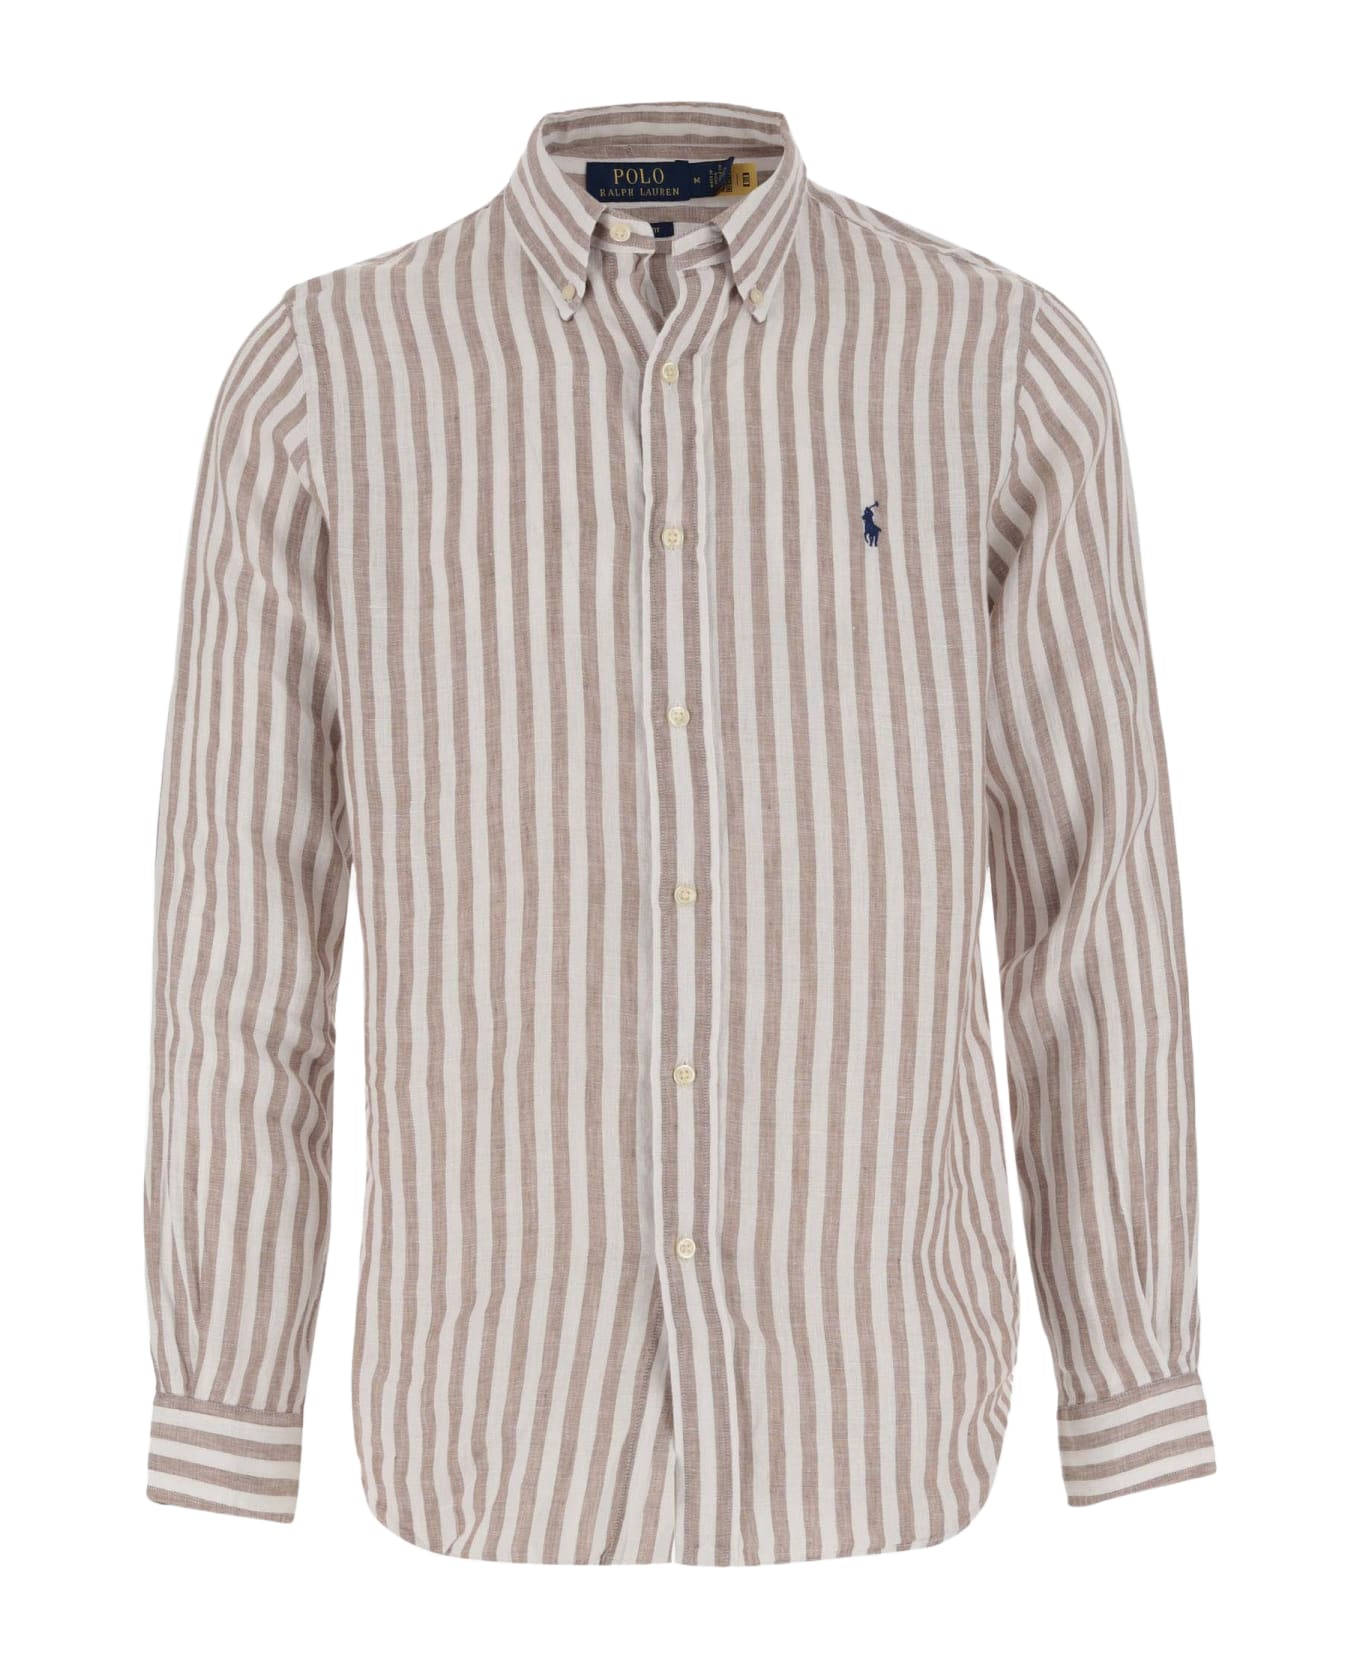 Polo Ralph Lauren Linen Shirt With Striped Pattern And Logo Polo Ralph Lauren